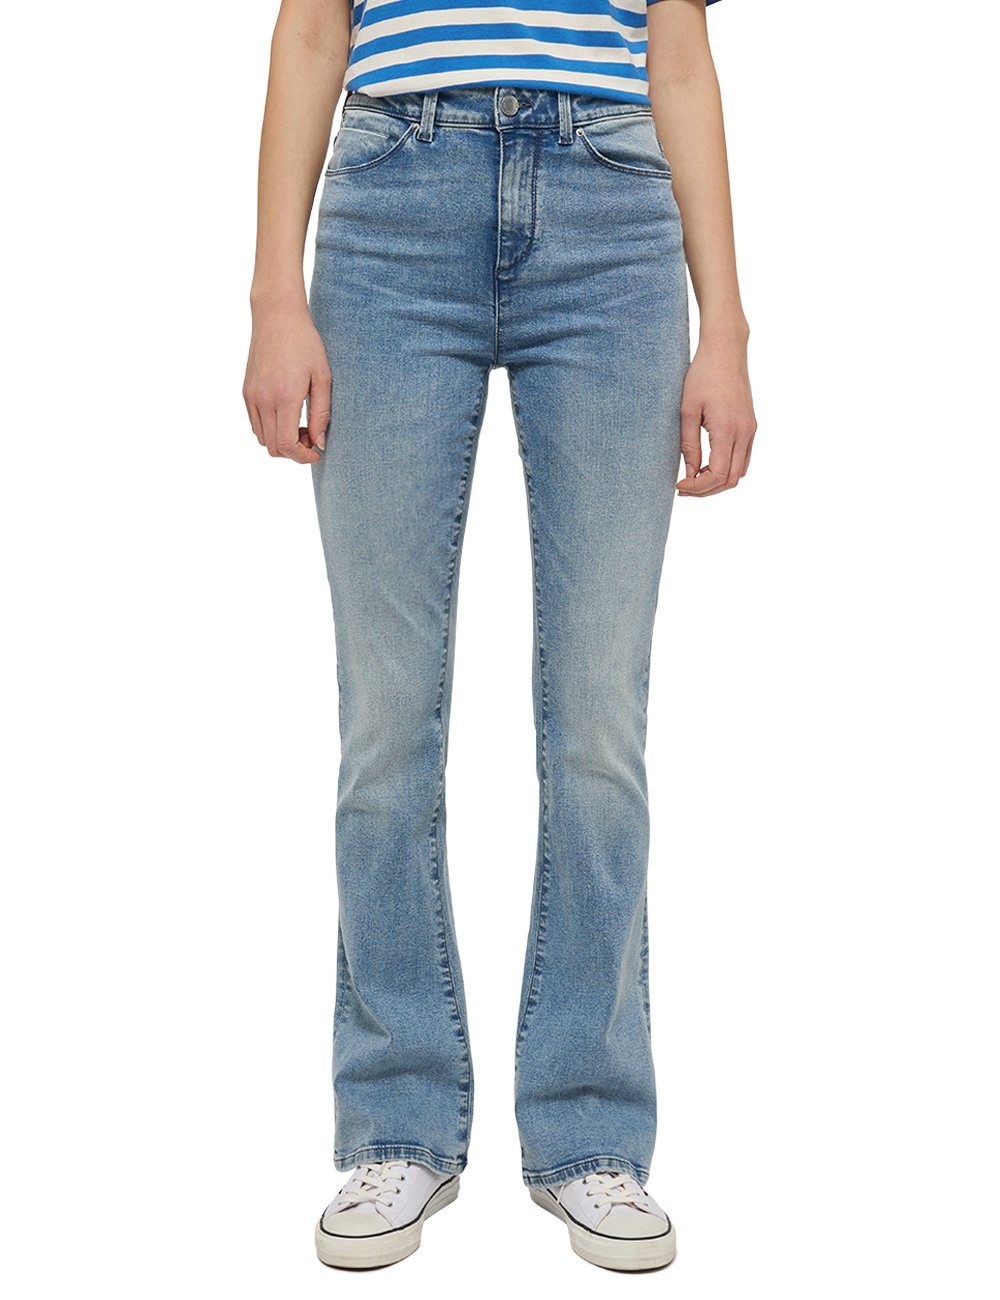 MUSTANG Skinny-fit-Jeans Style Georgia Skinny Flared hellblau-5000204